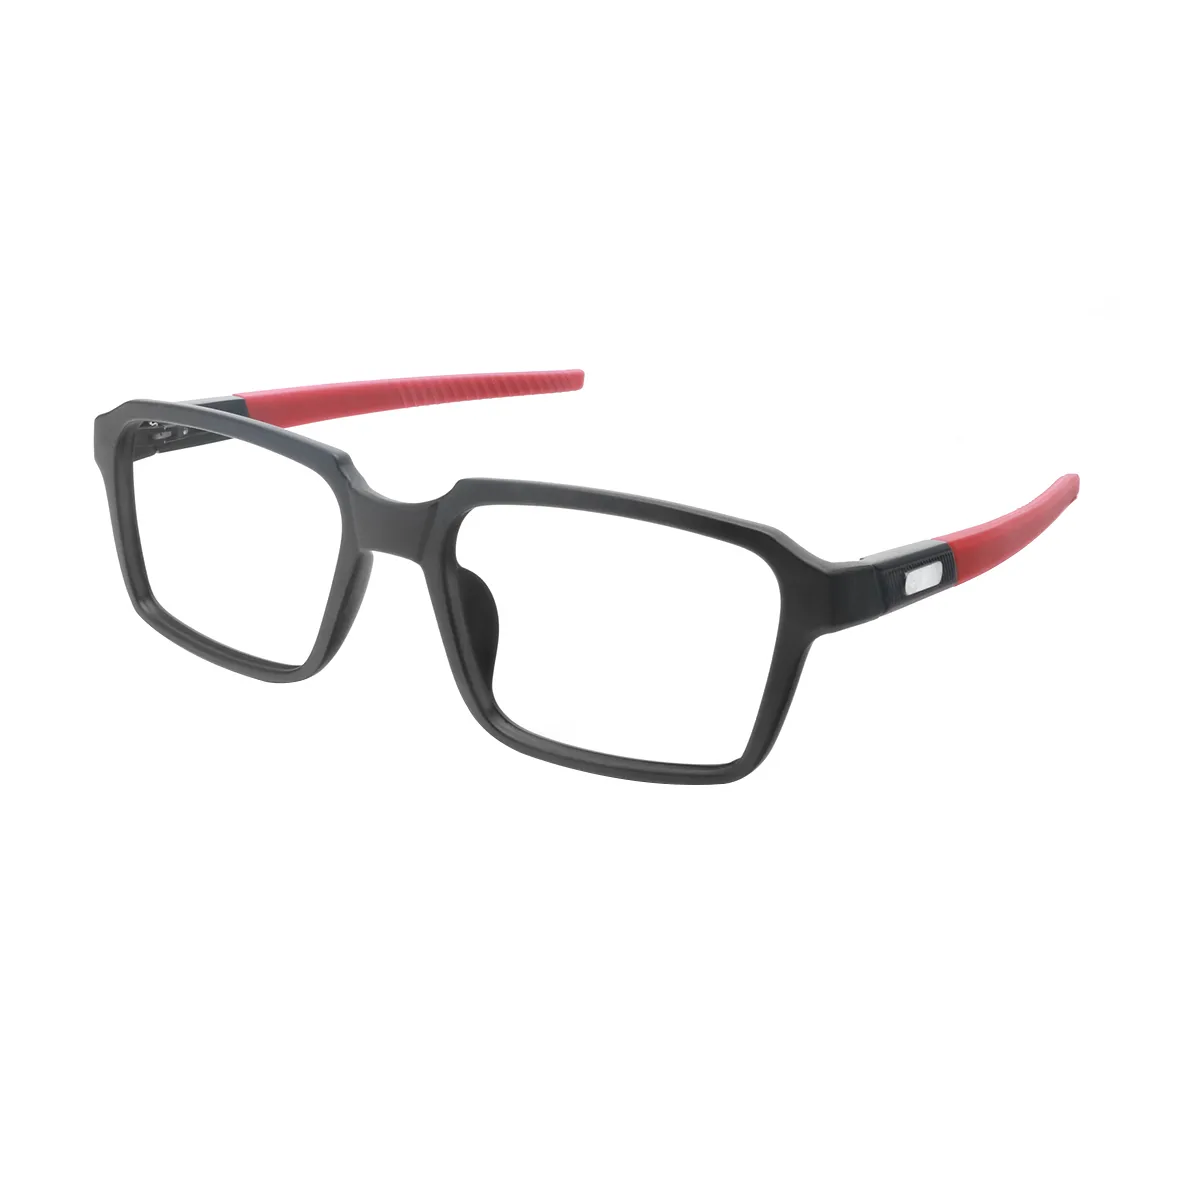 Elmo - Square Red Glasses for Men & Women